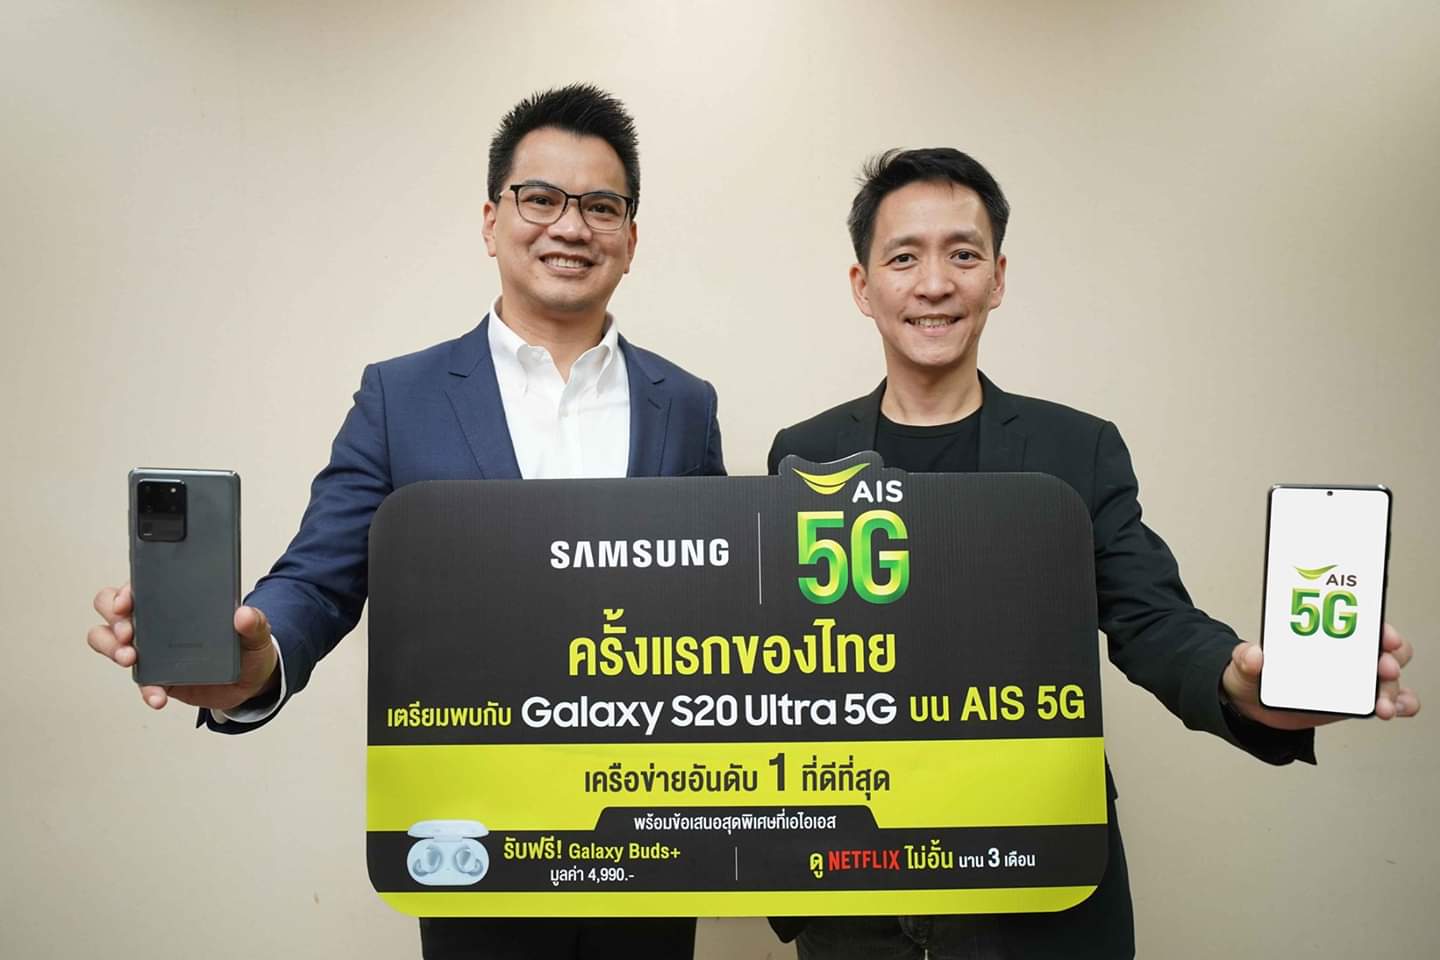 AIS ผนึก Samsung เตรียมมอบประสบการณ์ AIS 5G กับ Samsung Galaxy S20 Ultra 5G  เร็วๆ นี้